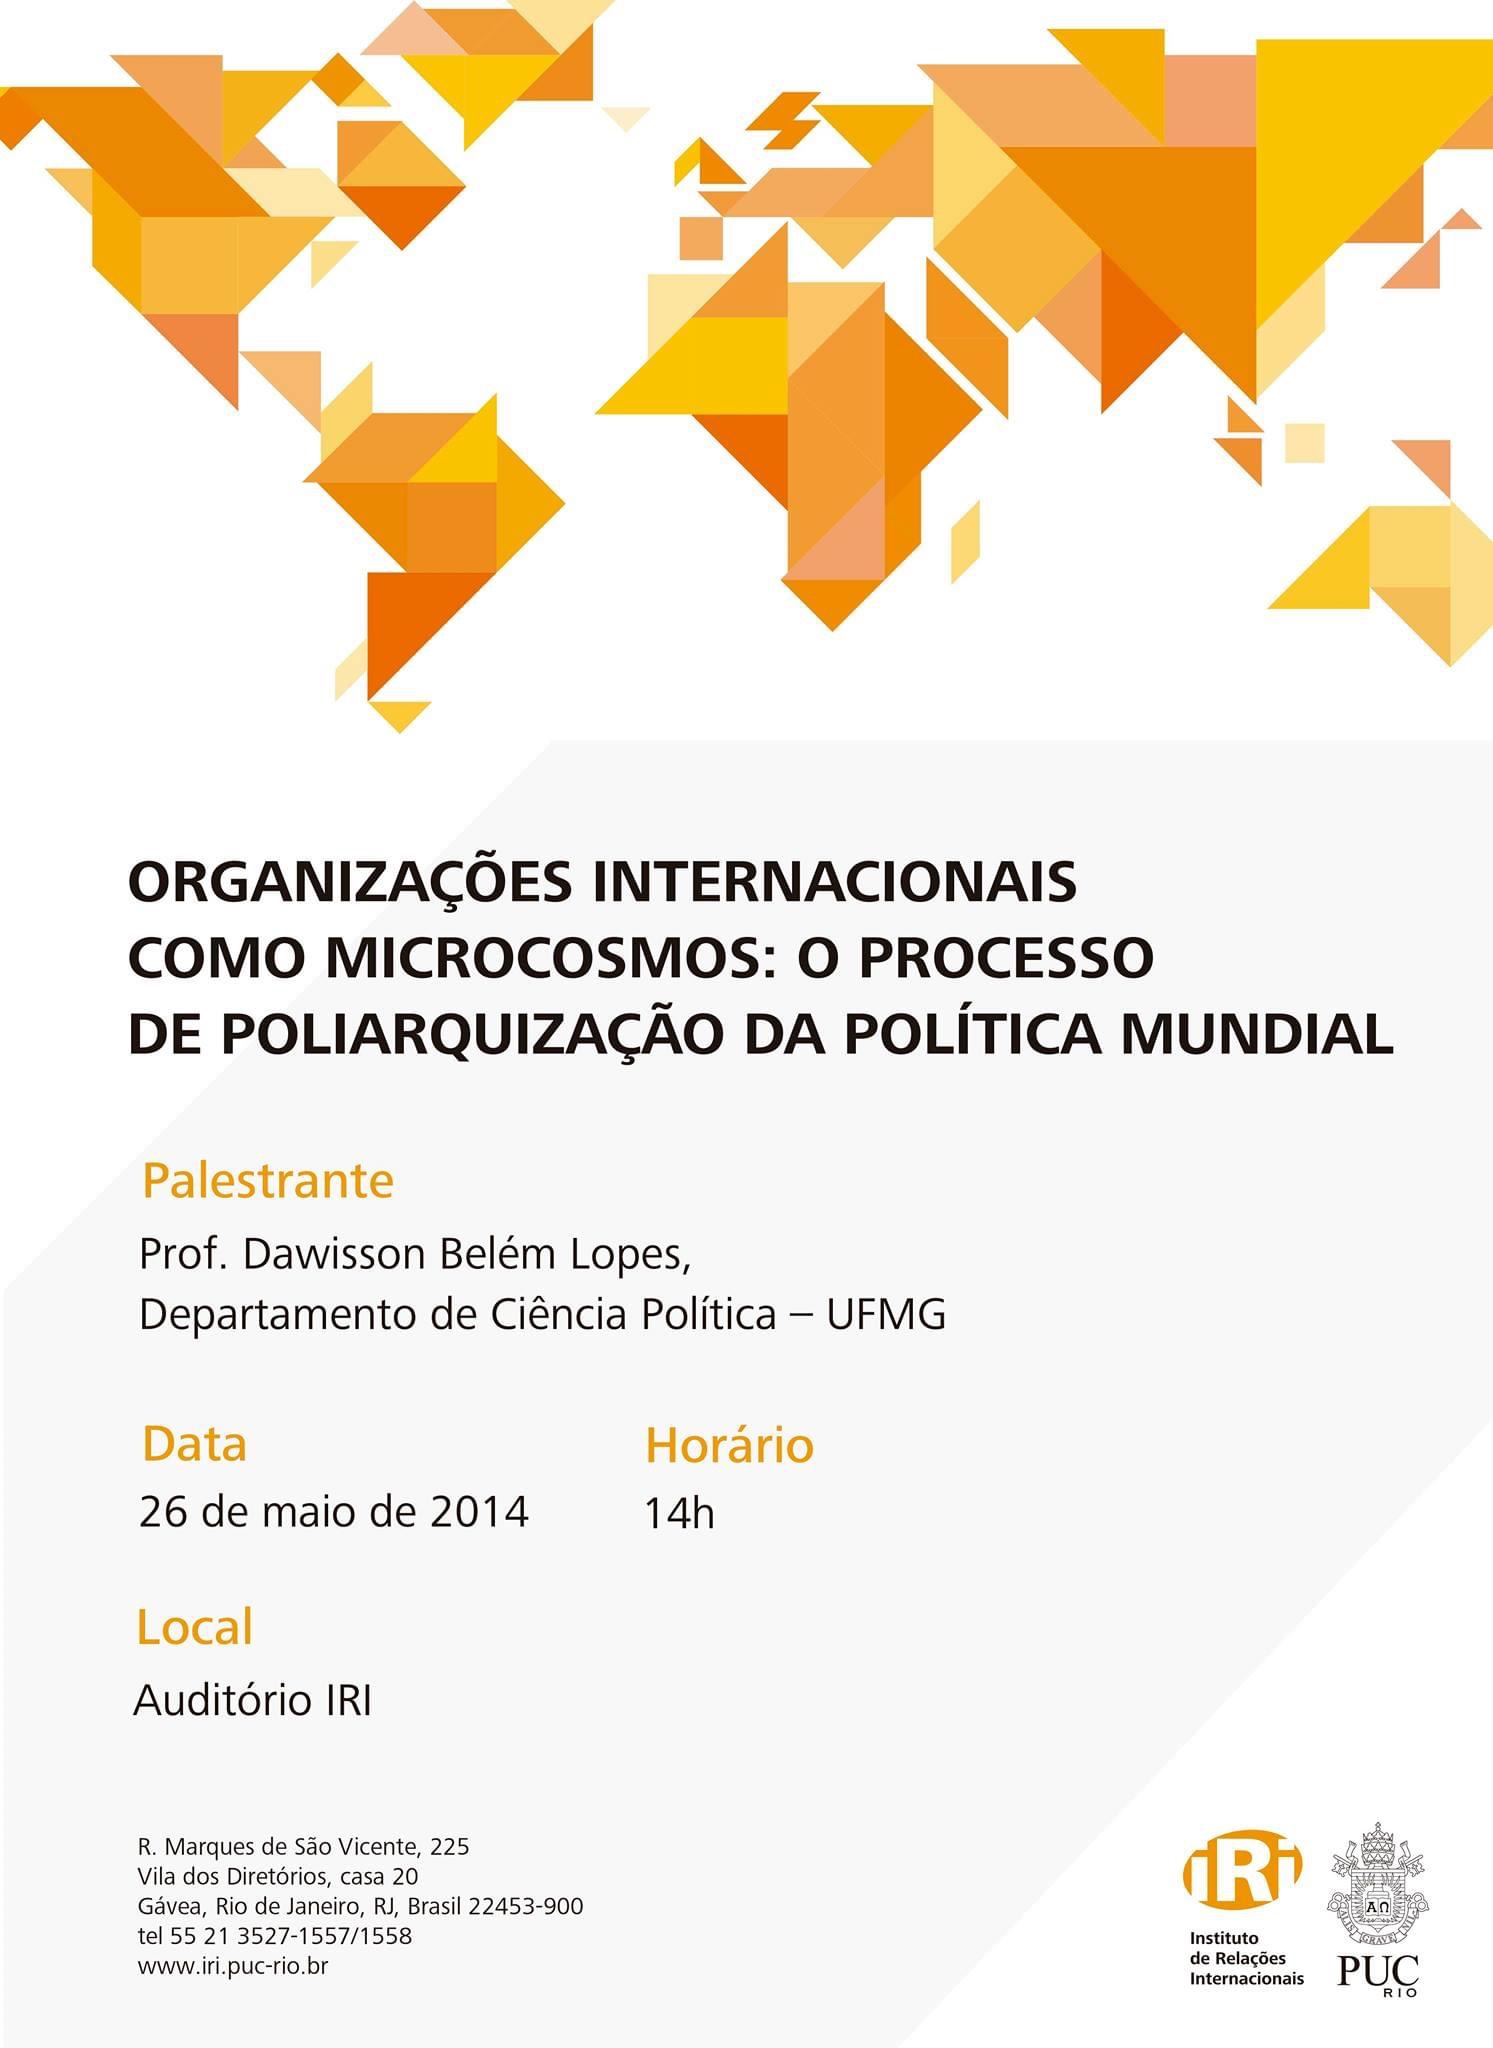 Organizações Internacionais como microcosmos: o processo de poliarquização da política mundial